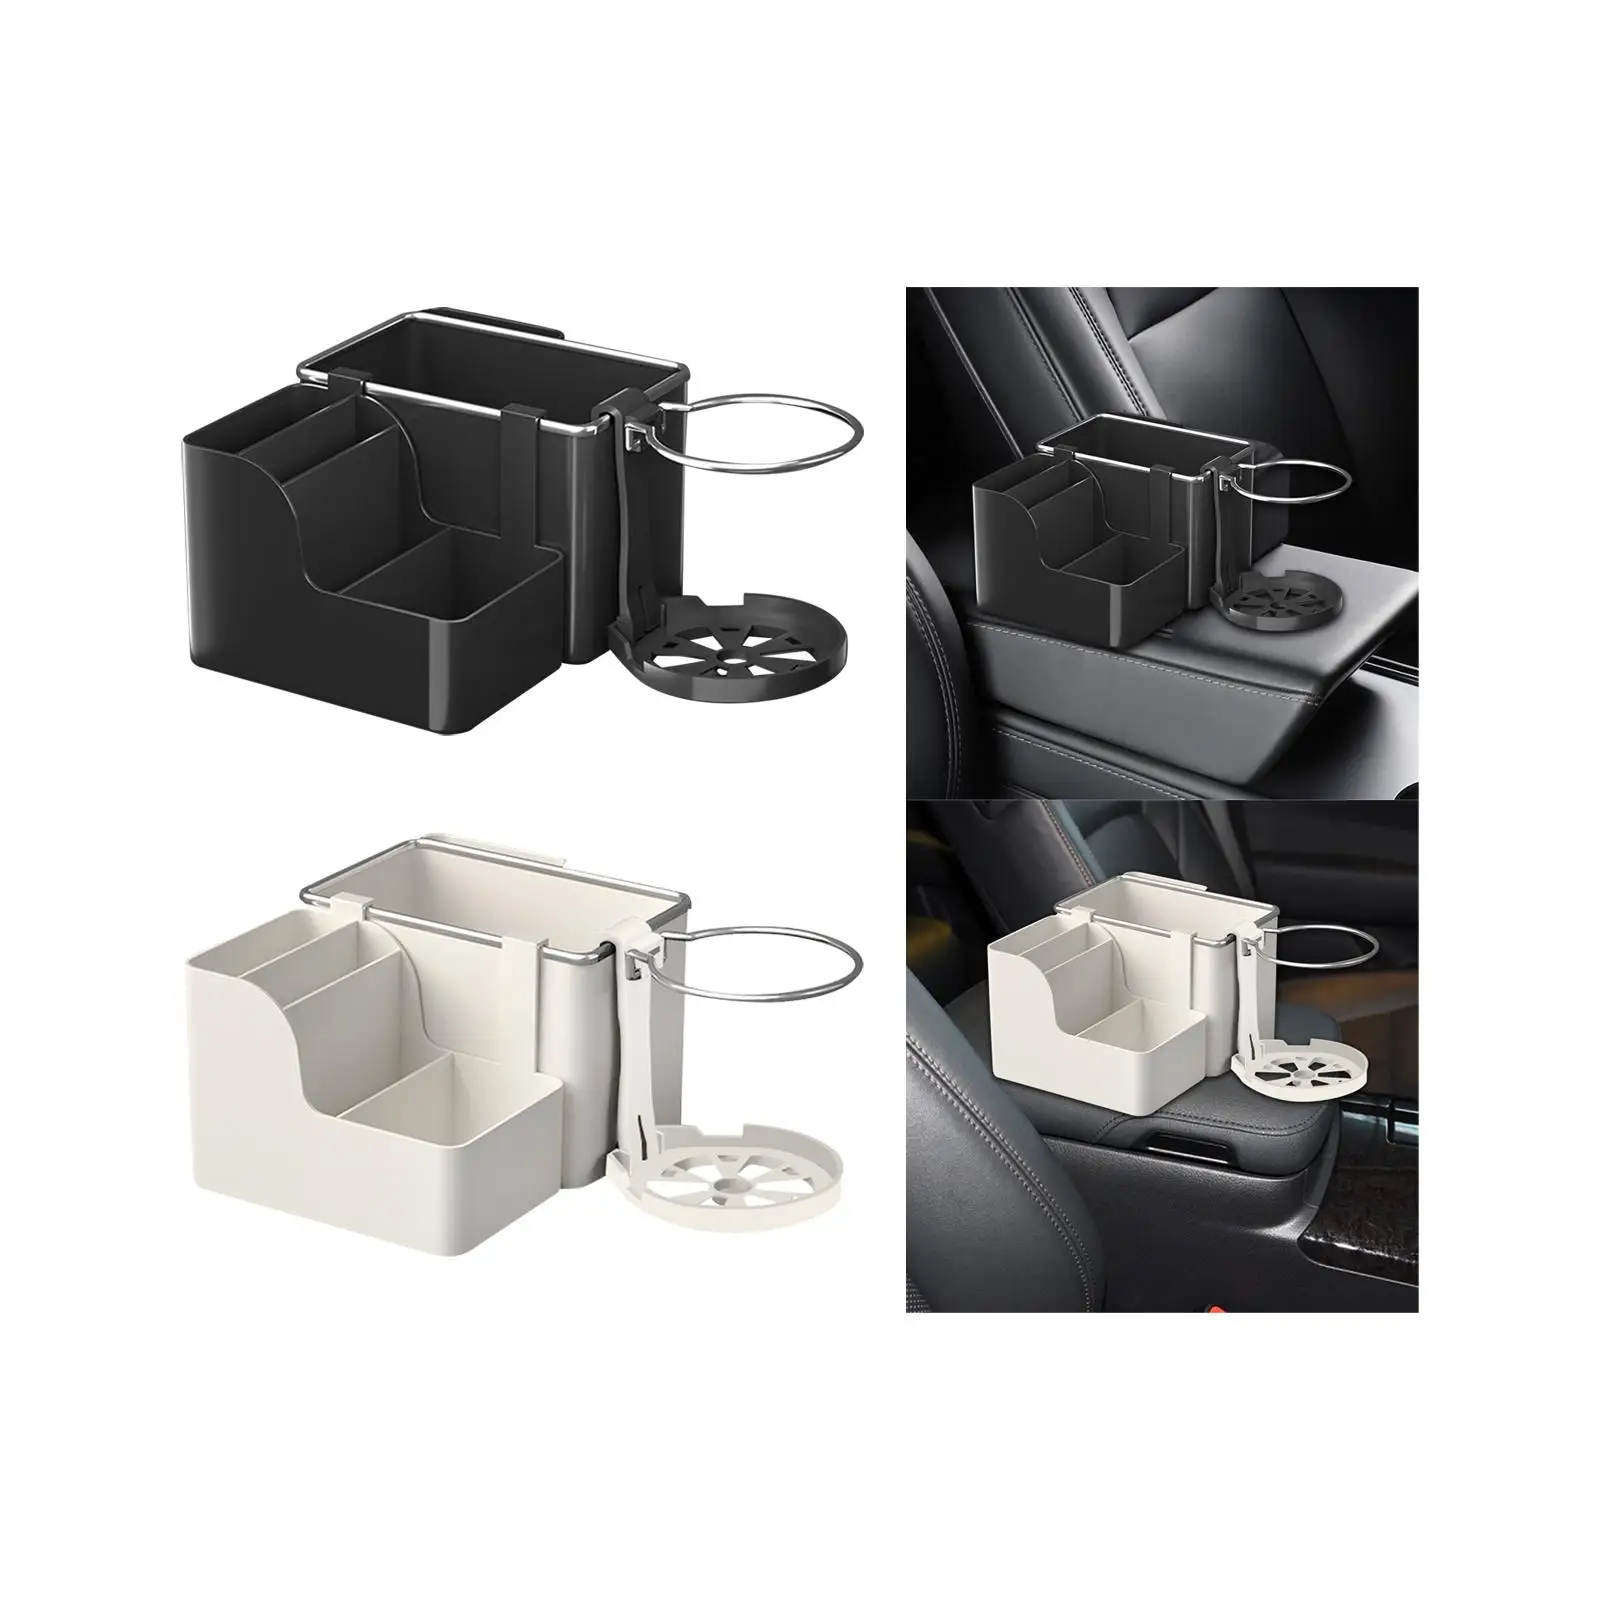  Аксессуары для ящика для хранения автомобильного подлокотника Универсальные для автомобиля, дома и офиса - 4